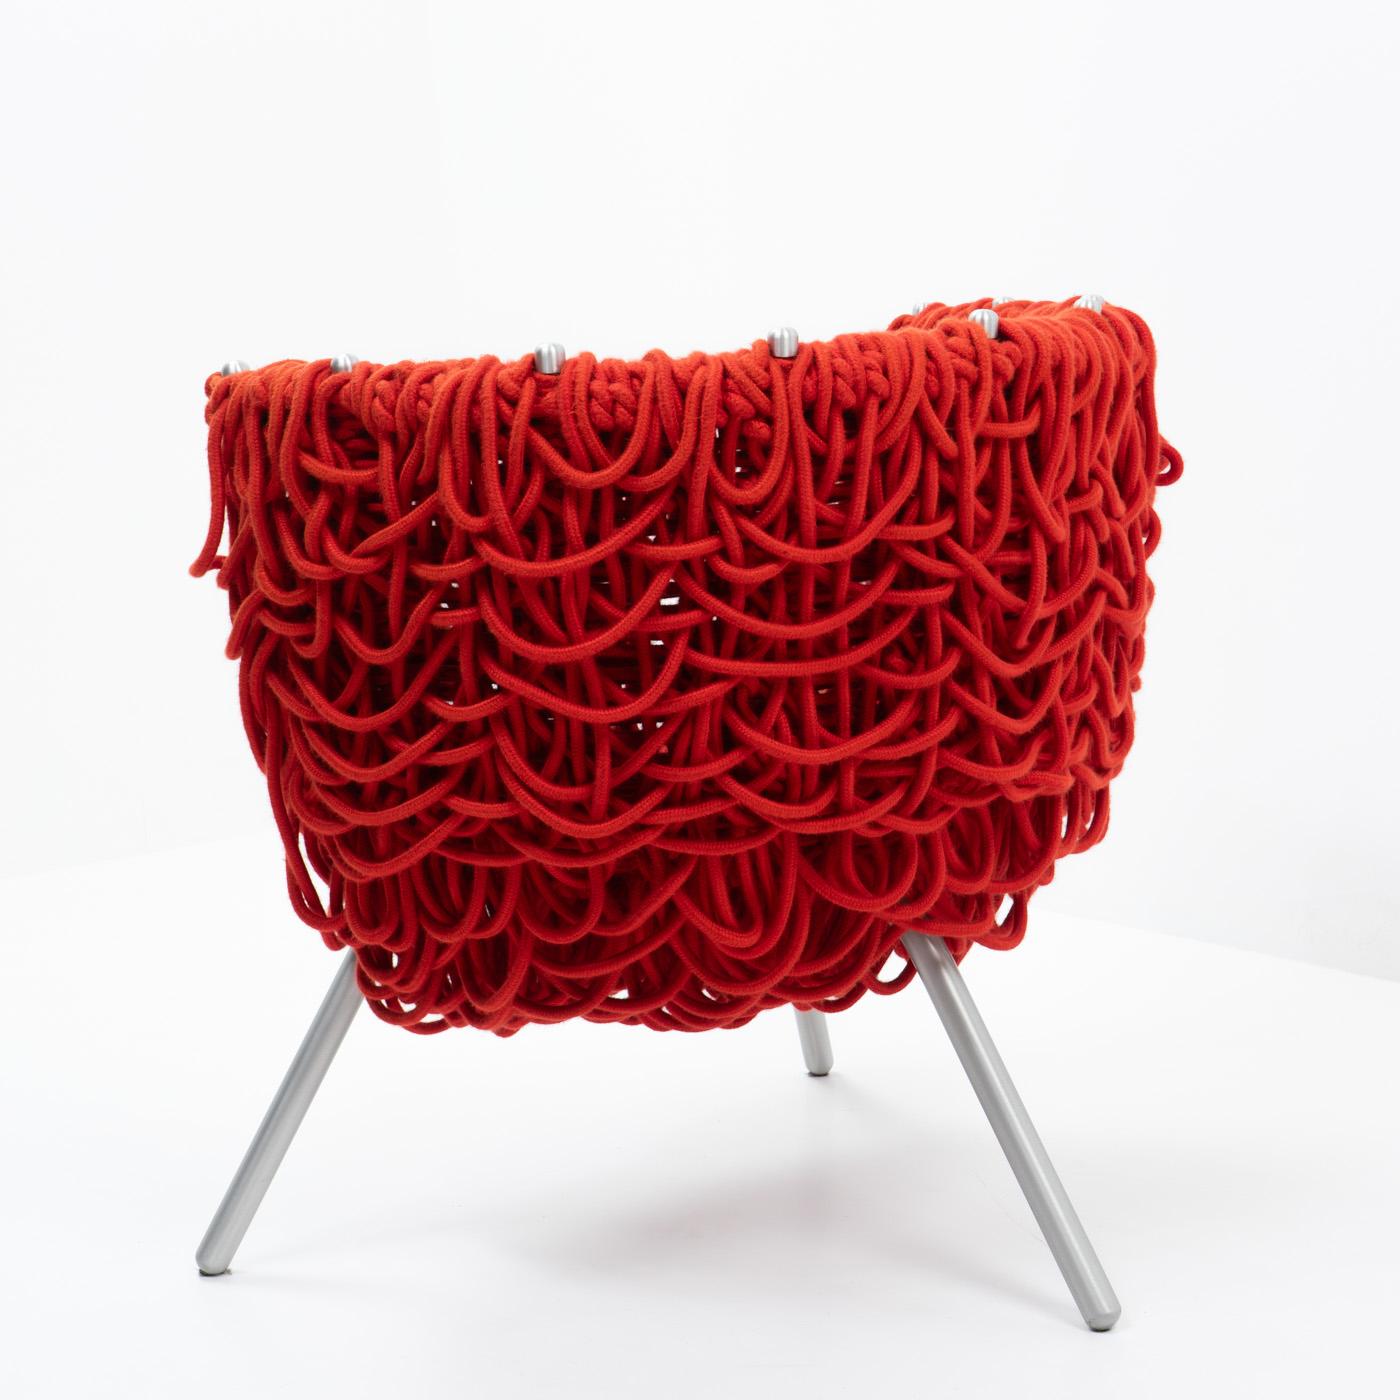 Italian Vermelha Chair, Campana Brothers for Edra, 2000s For Sale